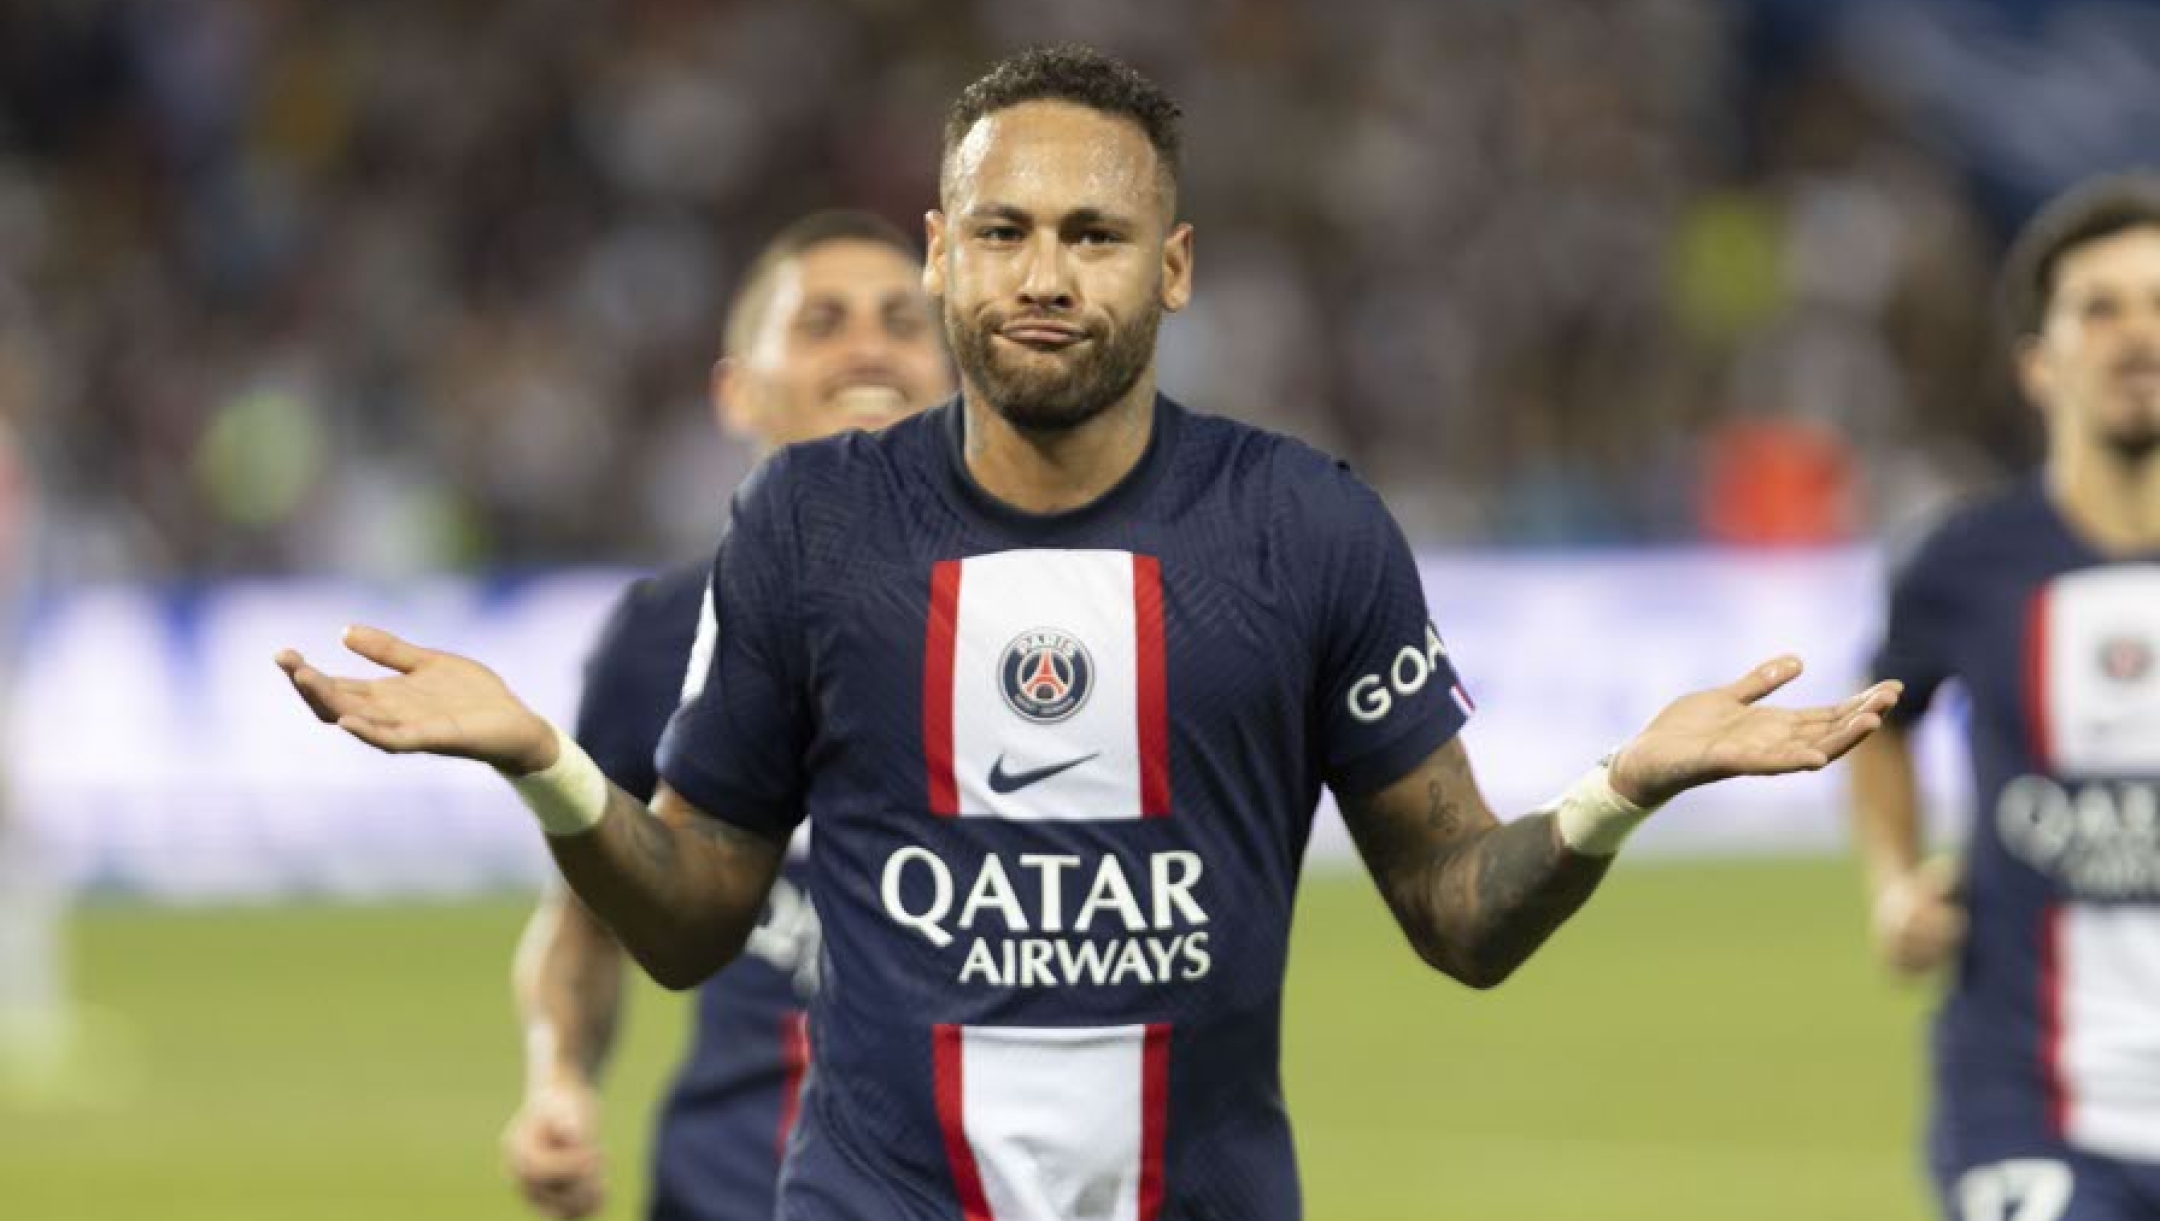 Il brasiliano del PSG ancora protagonista con due reti e un assist nella vittoria sul Montpellier nel secondo turno di Ligue 1